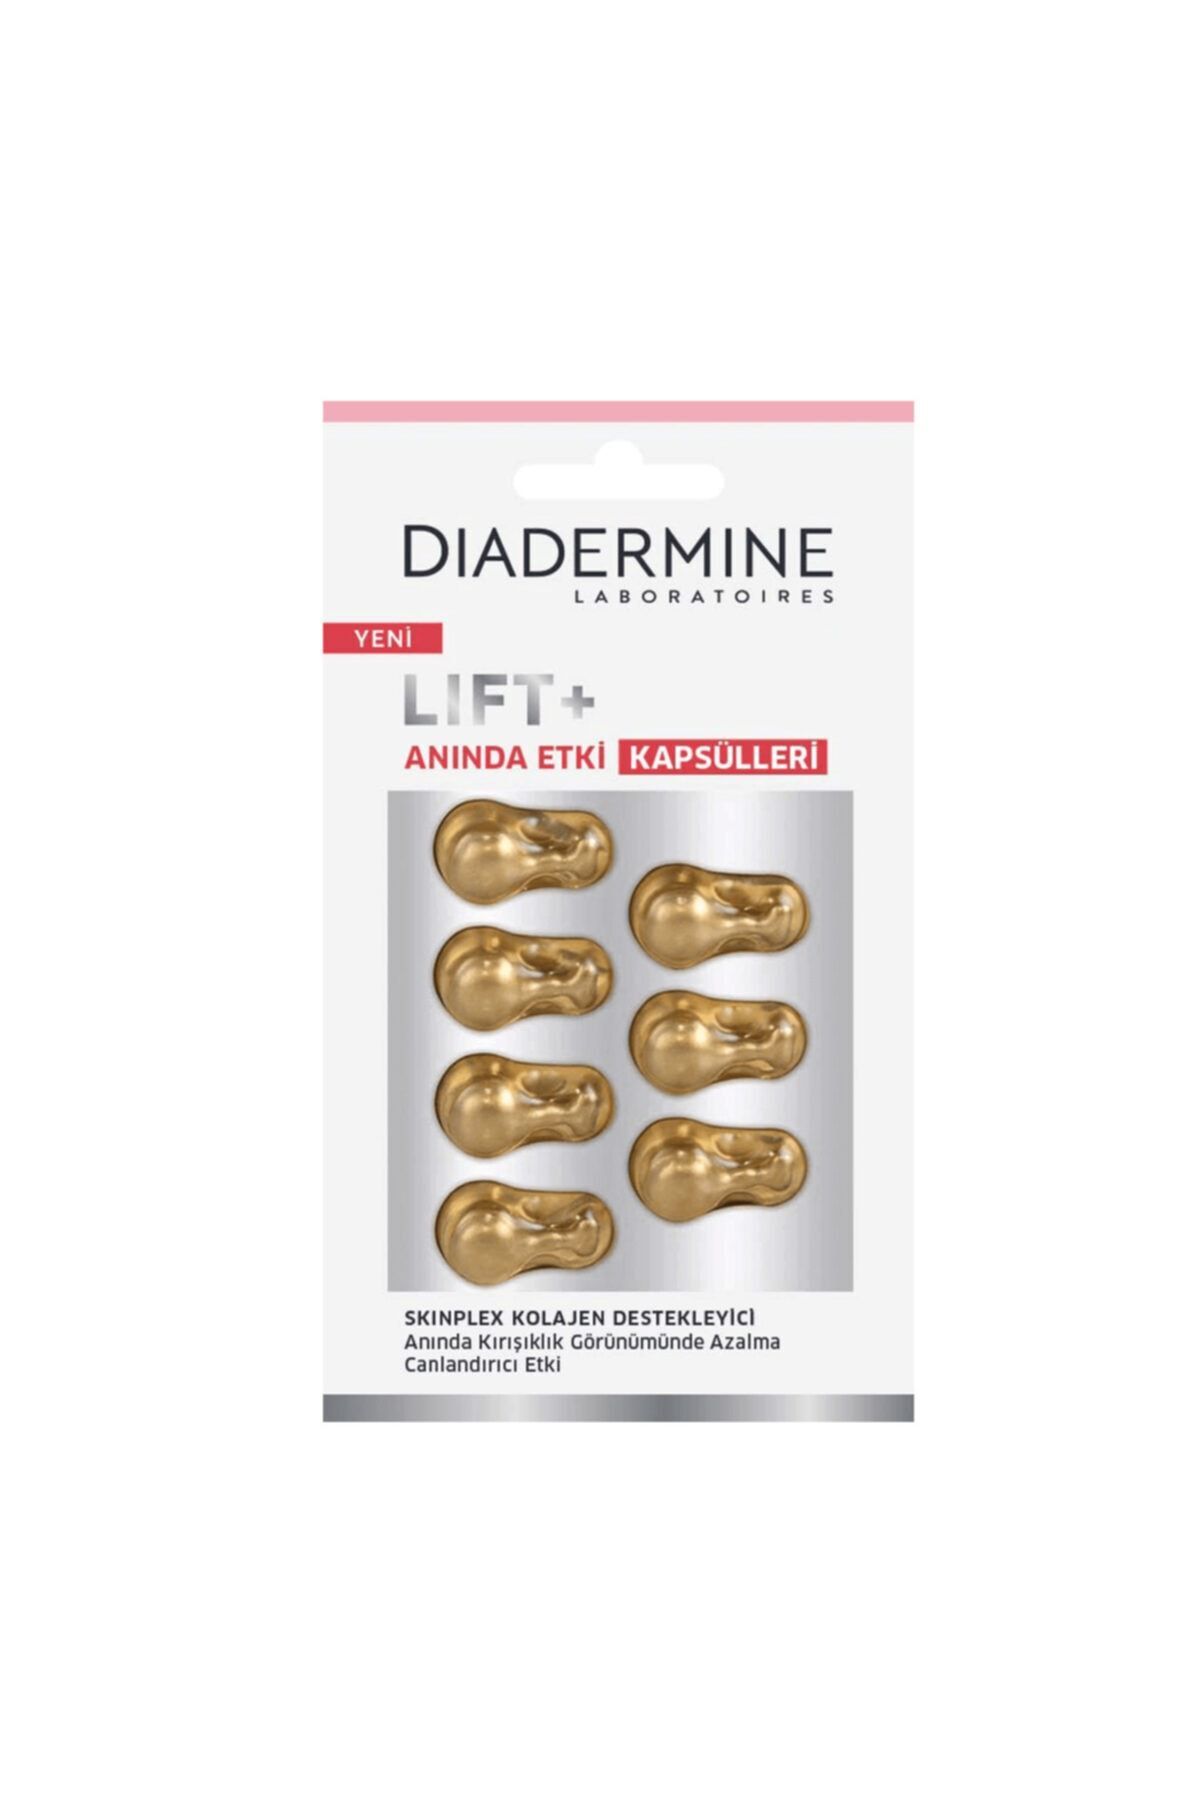 Diadermine Lift+ Anında Etki Kolajen Destekleyici Kapsülleri